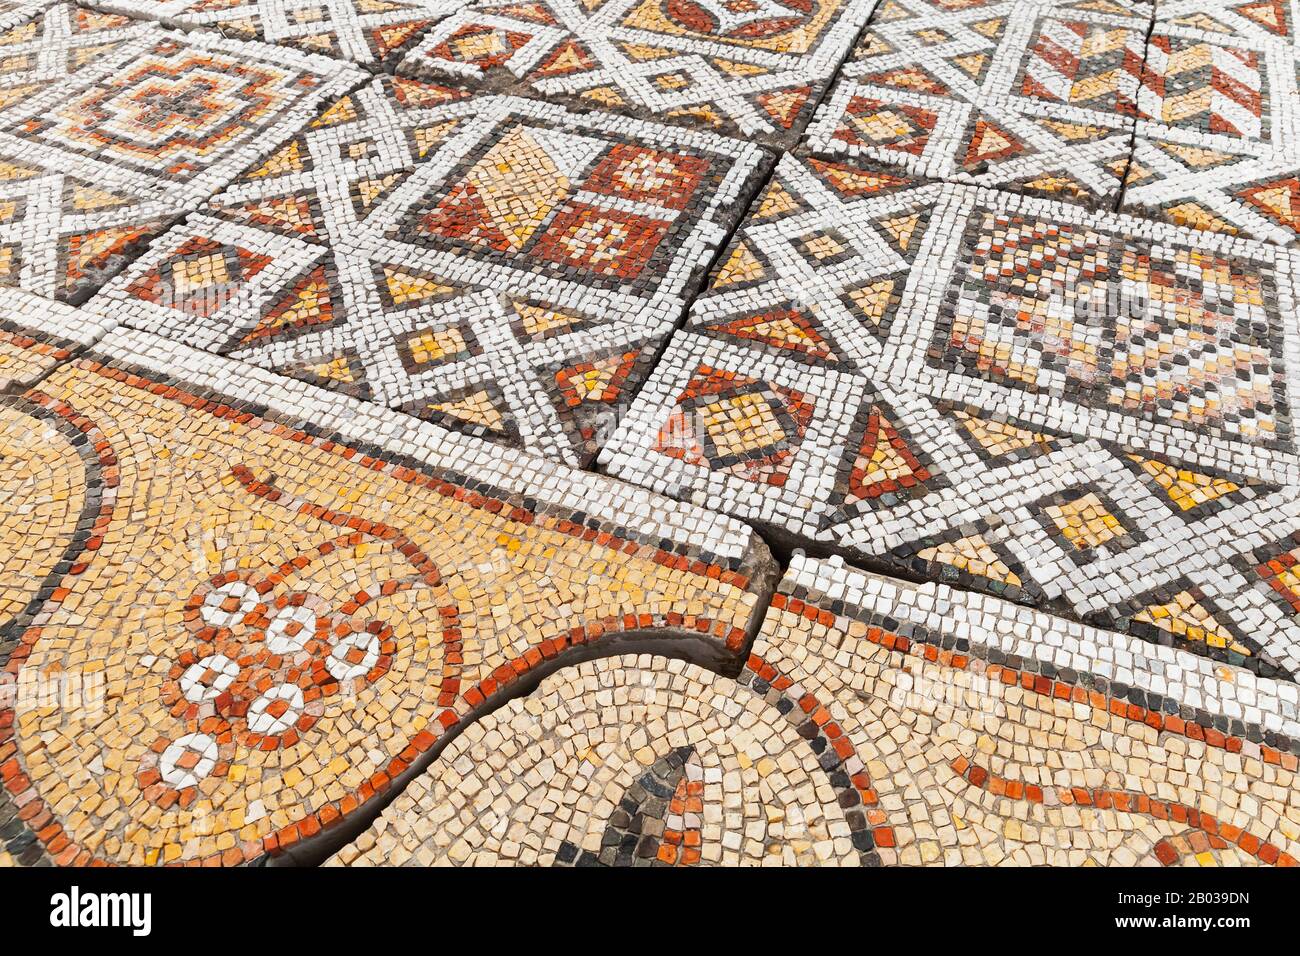 Pavimenti decorativi a mosaico a Chersonesos, un'antica colonia greca fondata circa 2500 anni fa nella parte sudoccidentale dei Penins Crimea Foto Stock